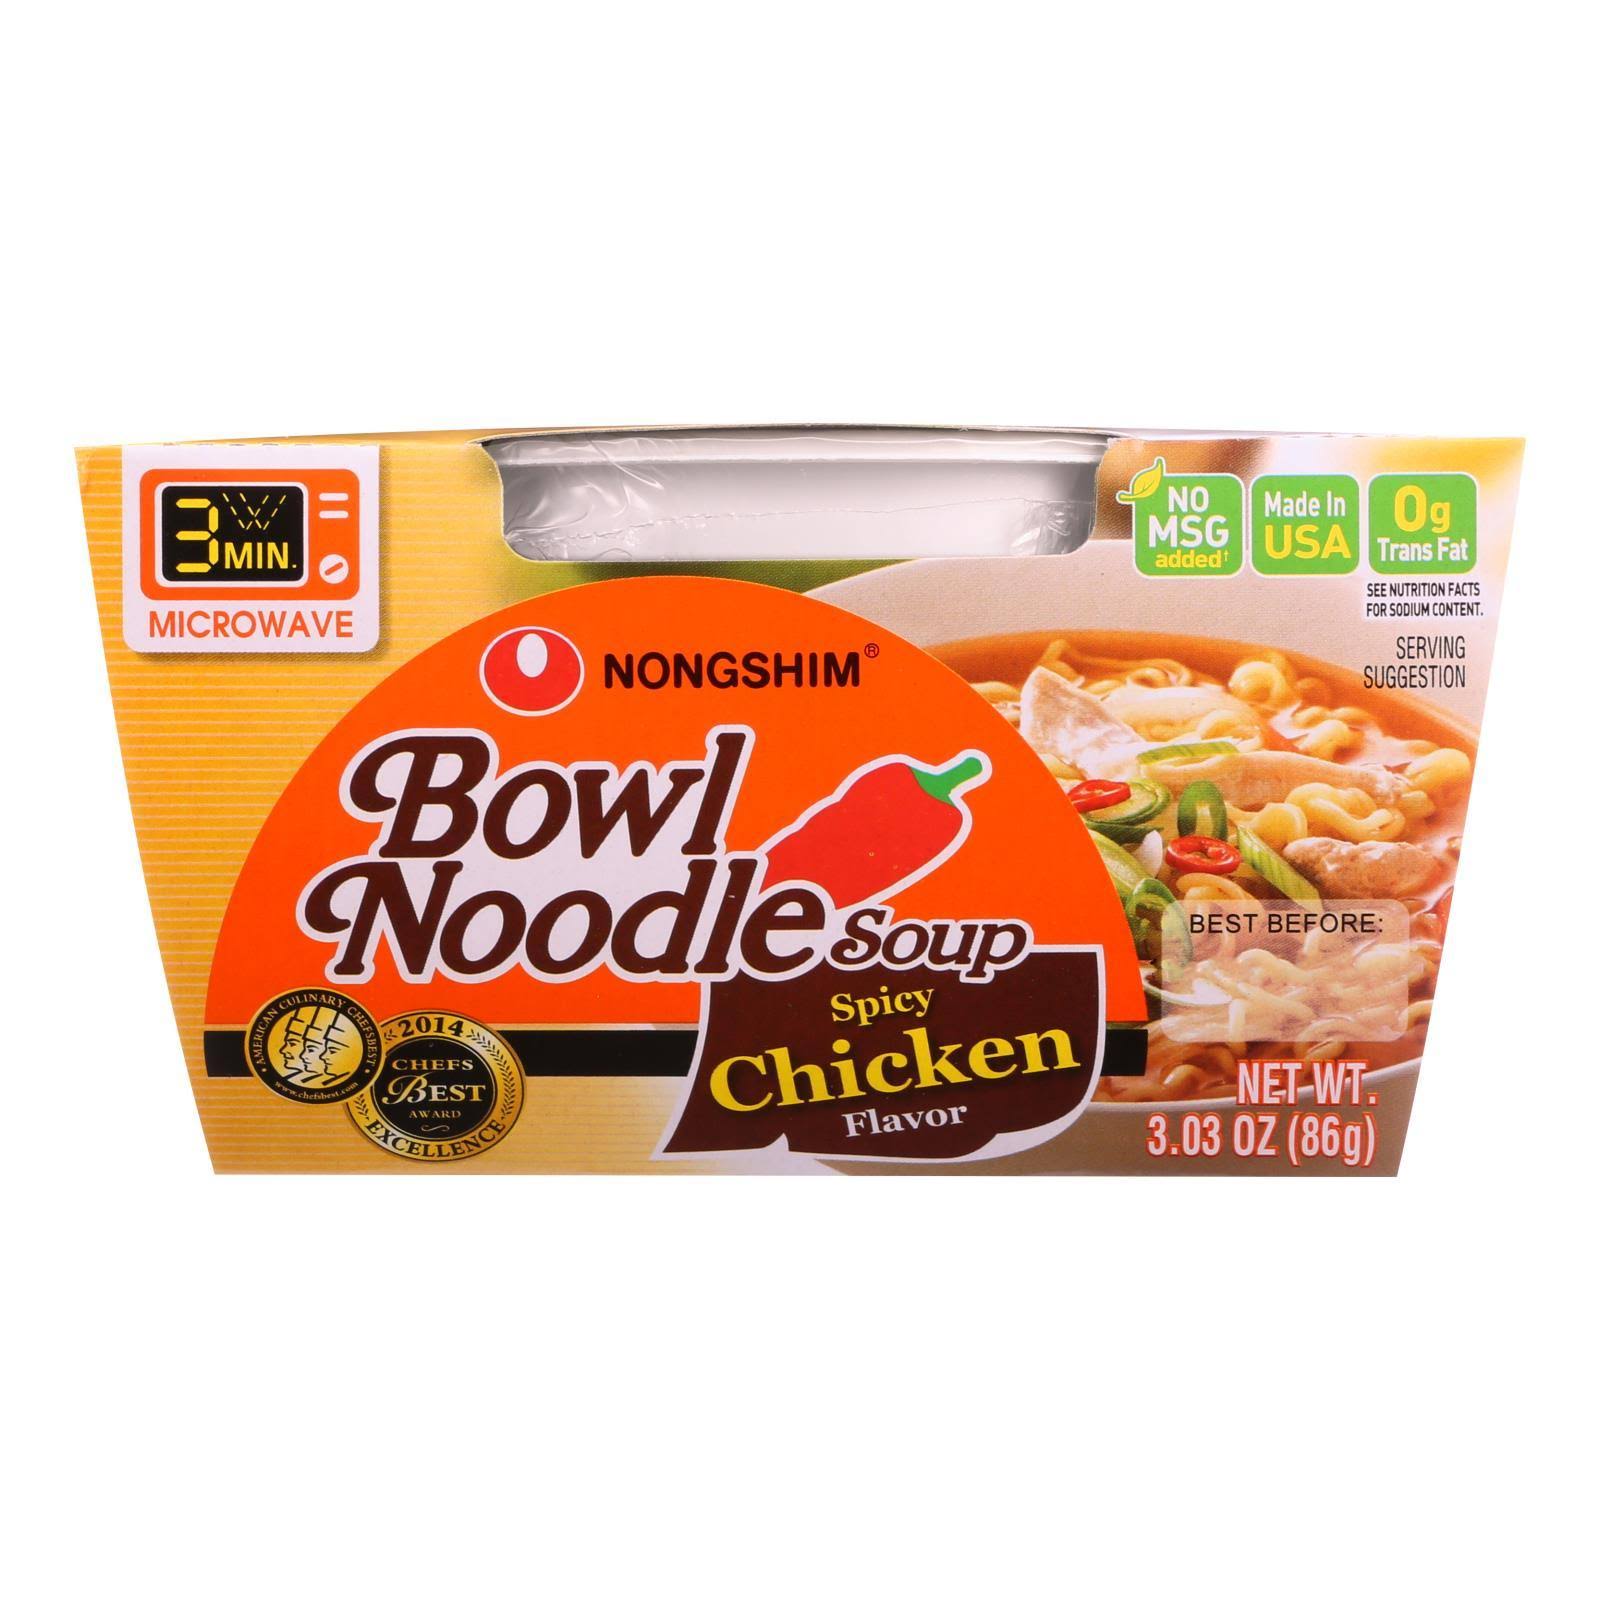 Nongshim Spicy Chicken Flavor Bowl Noodle Soup - 3.03oz